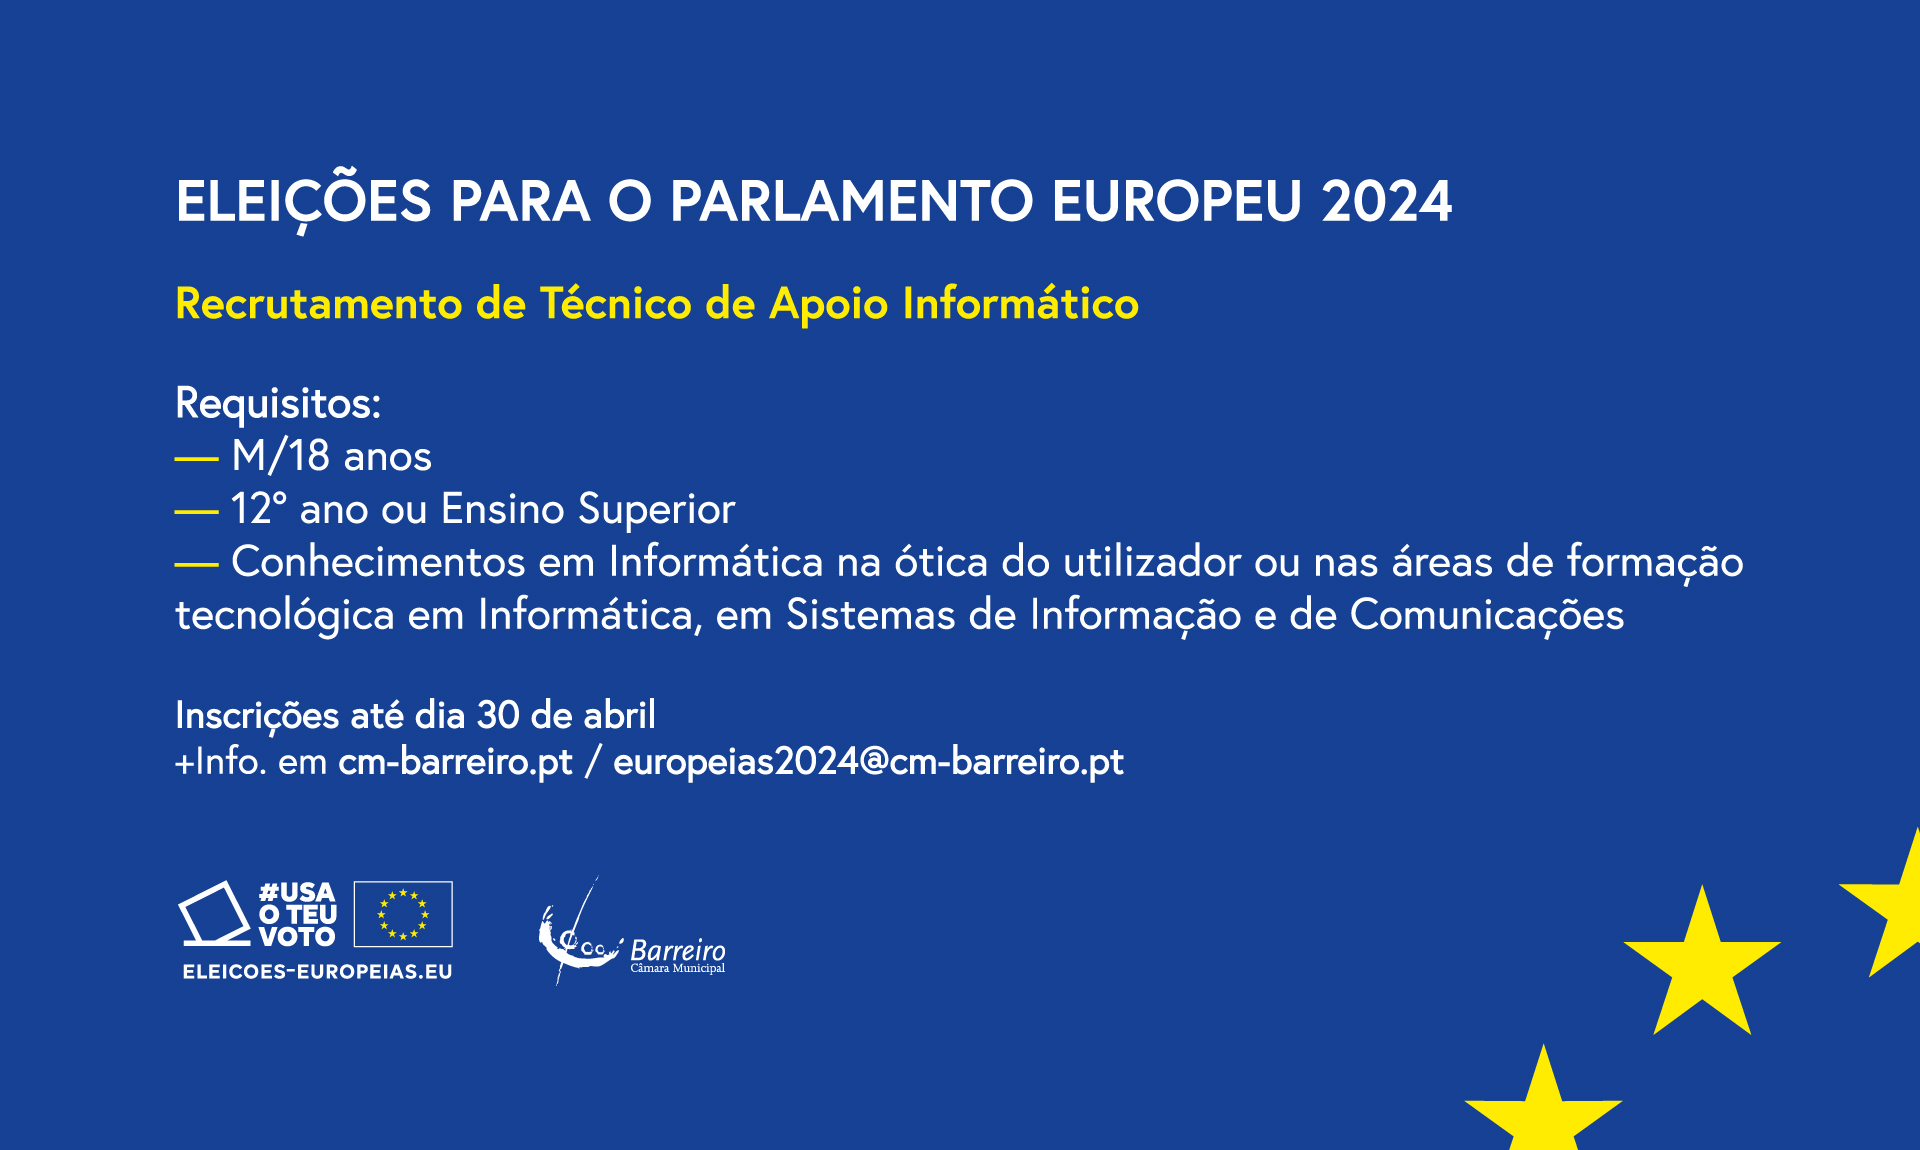 Informação dos requisitos para recrutamento de Técnico de Apoio Informático para as Europeias 2024